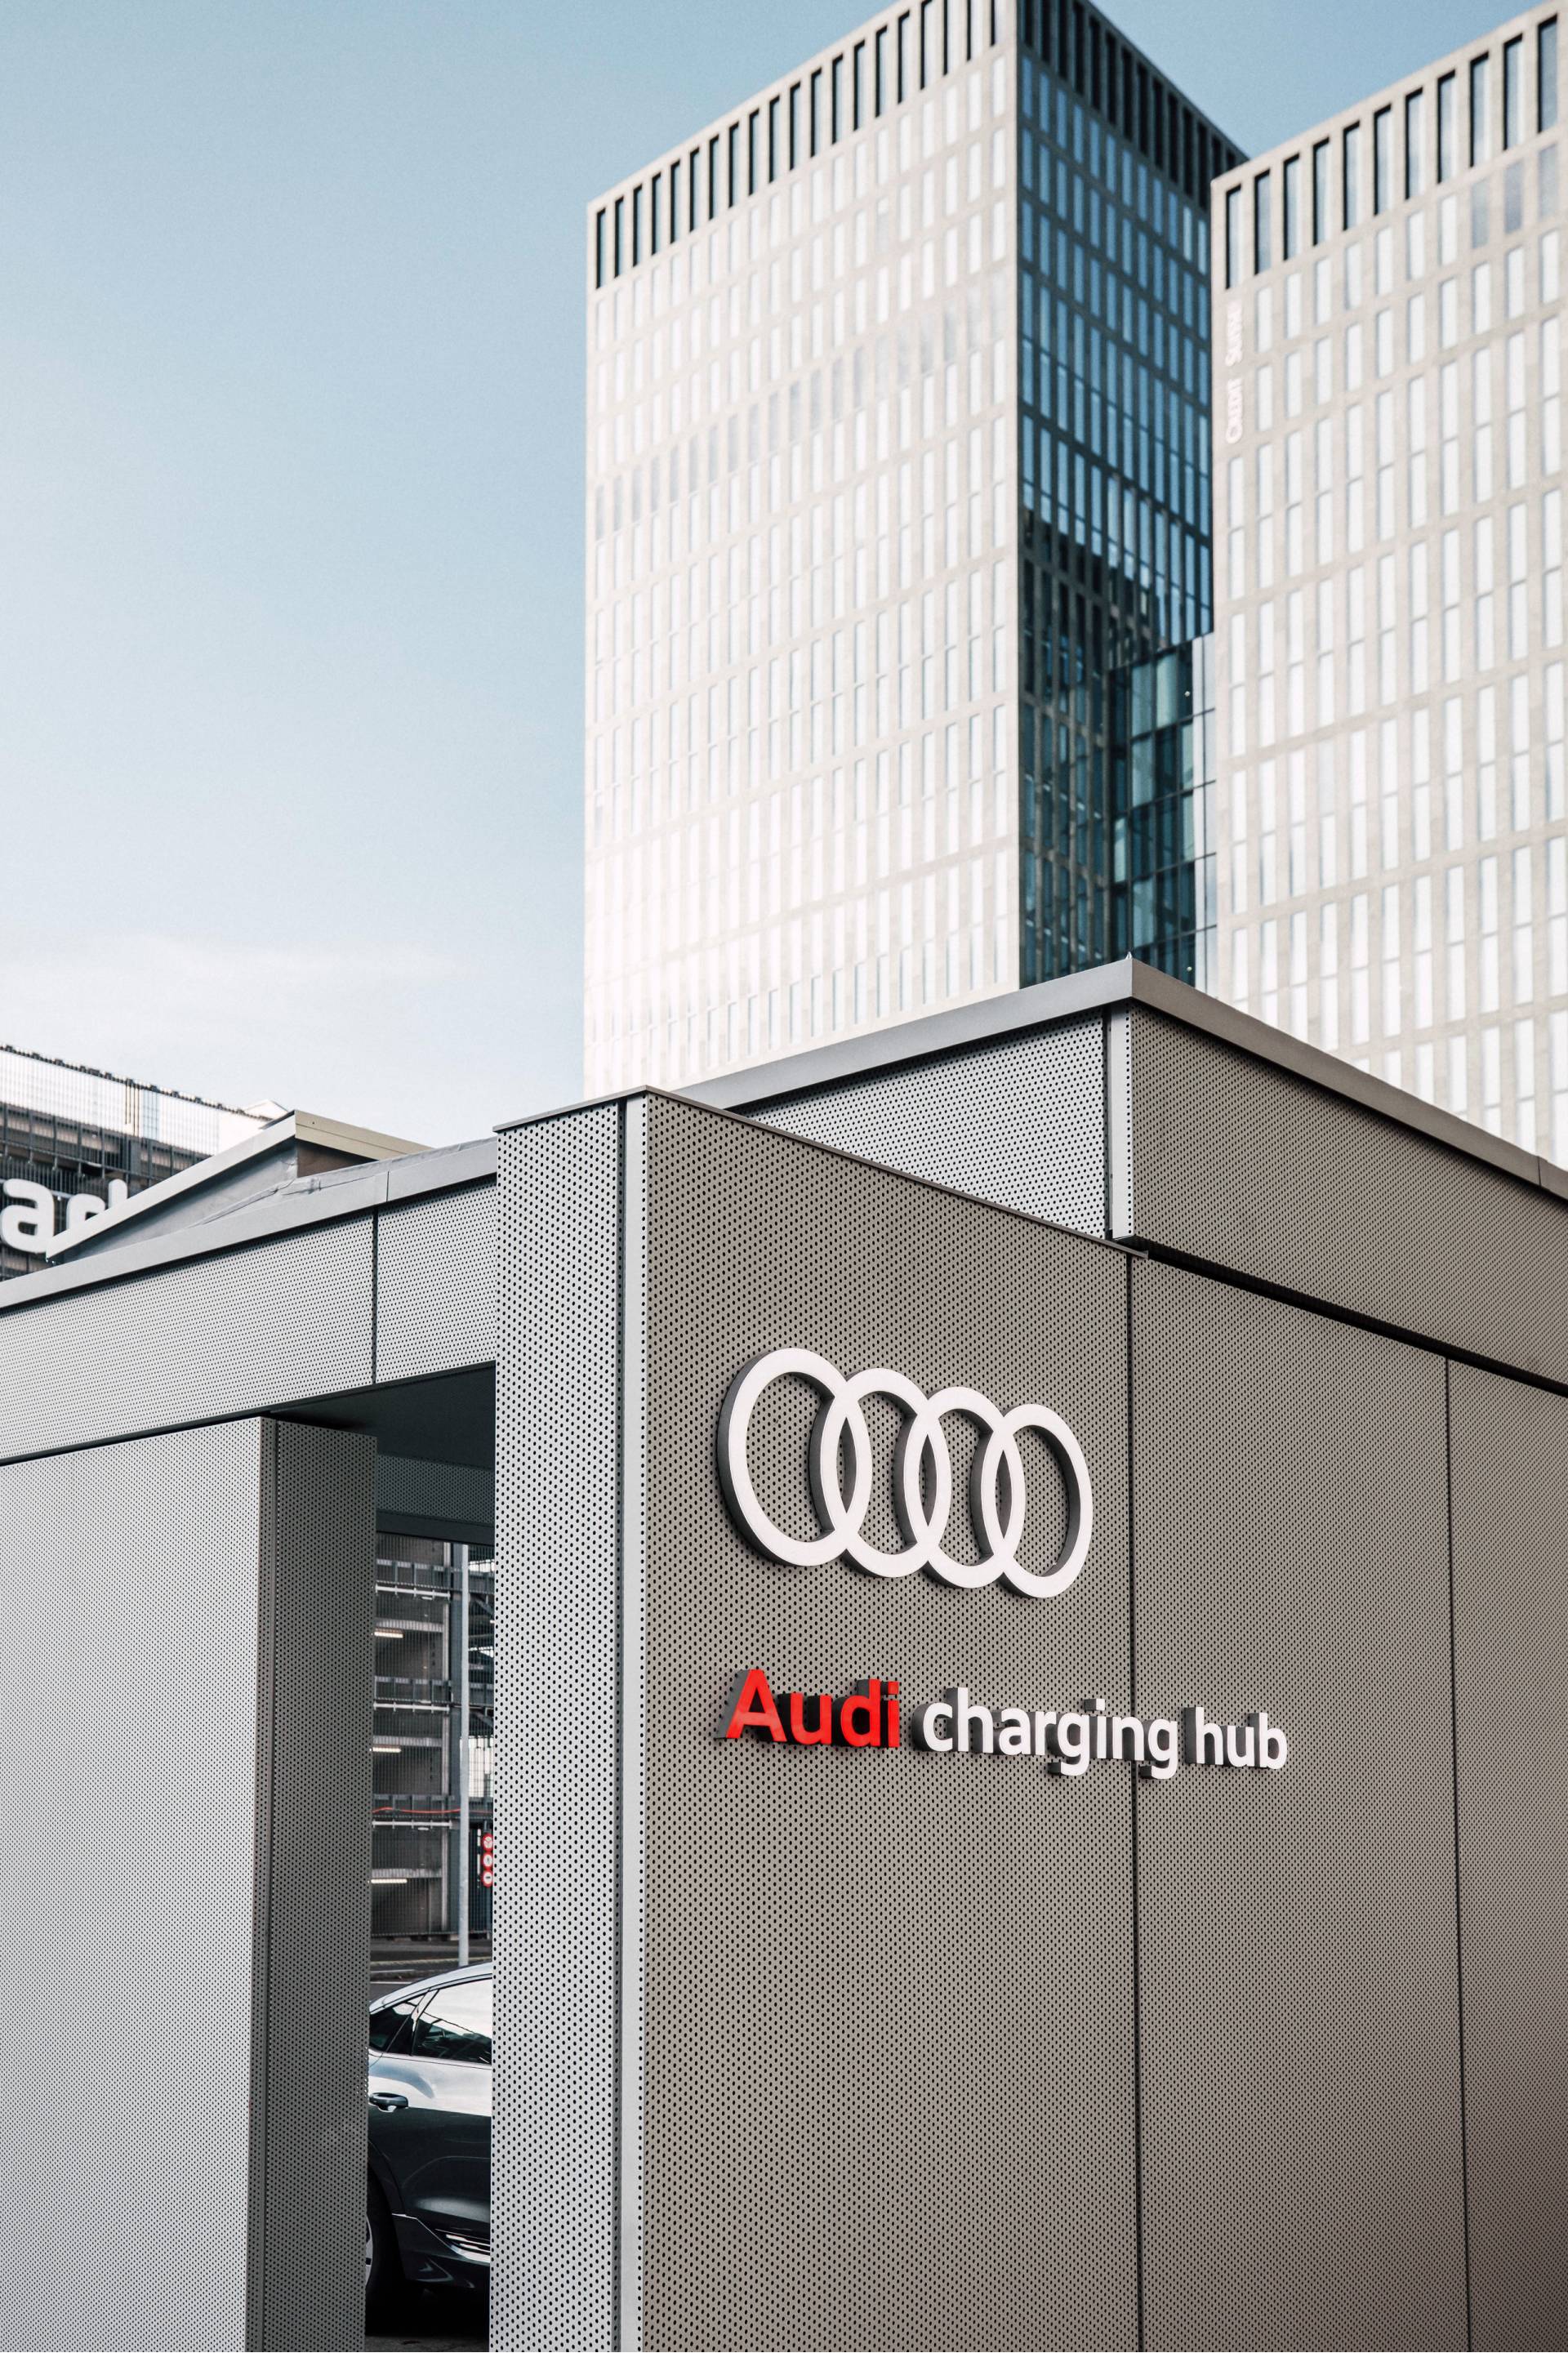 Audi charging hub, en arrière-plan, des immeubles.